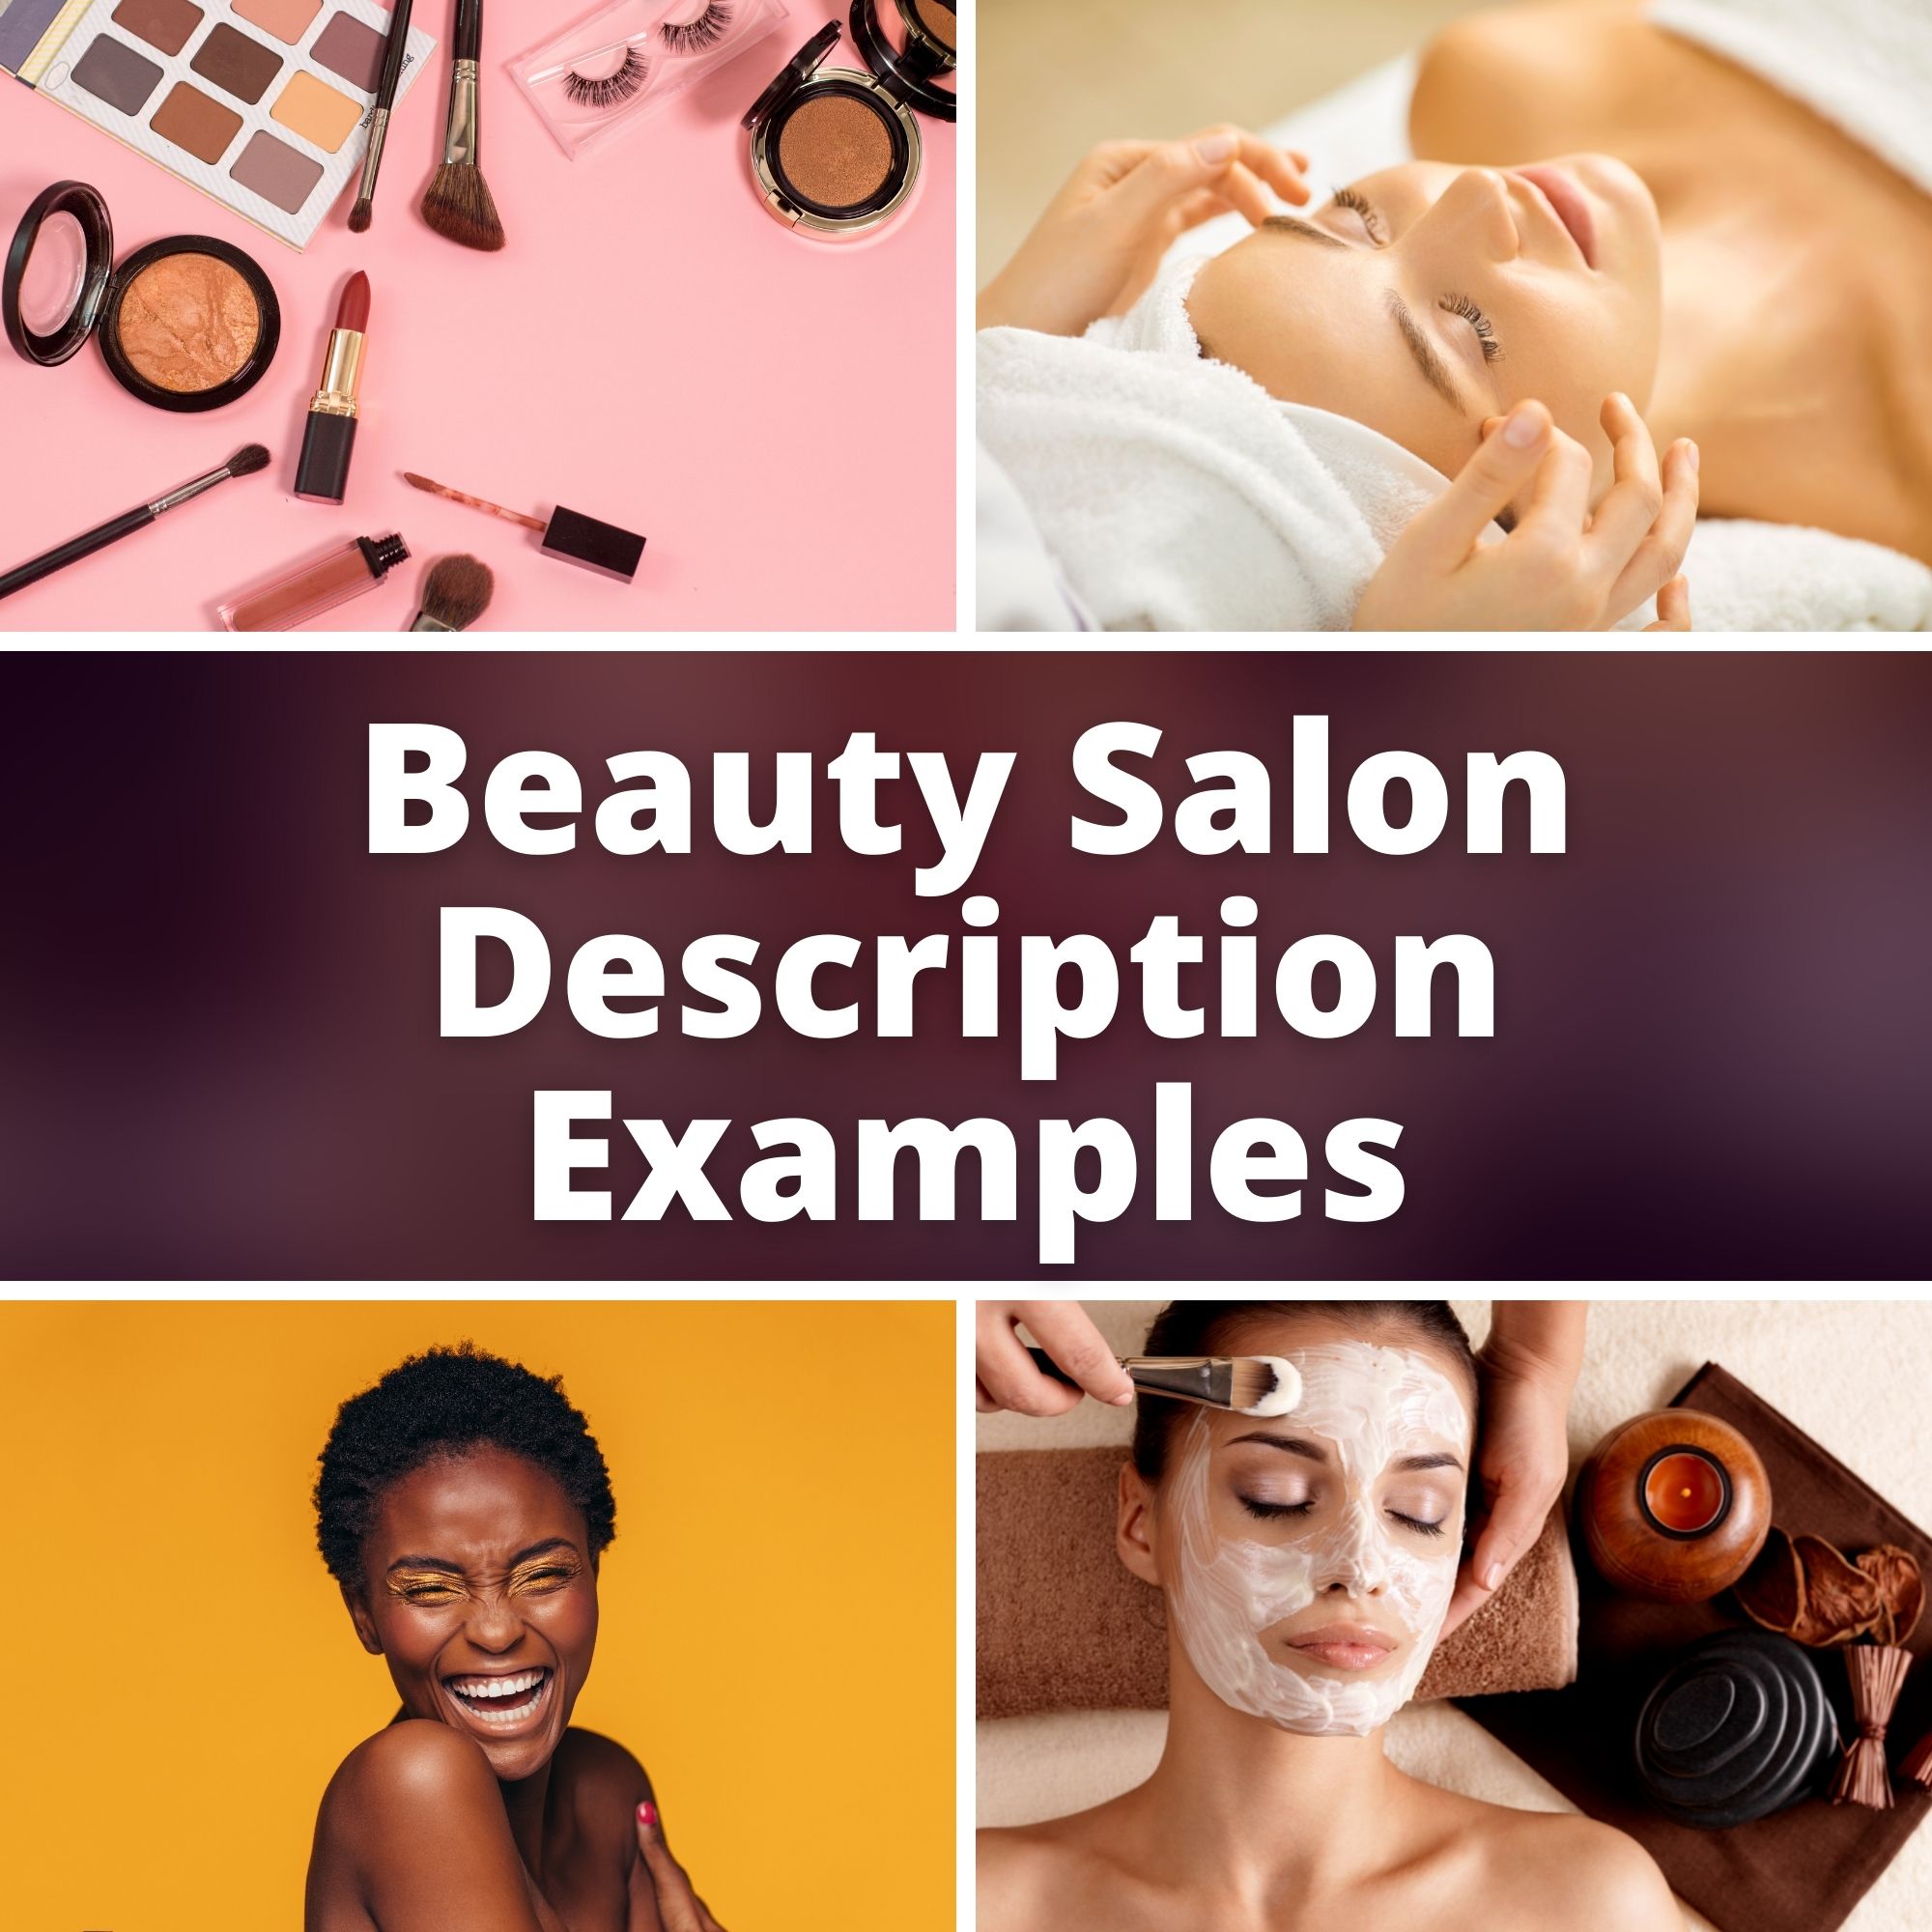 Beauty Salon Description Examples